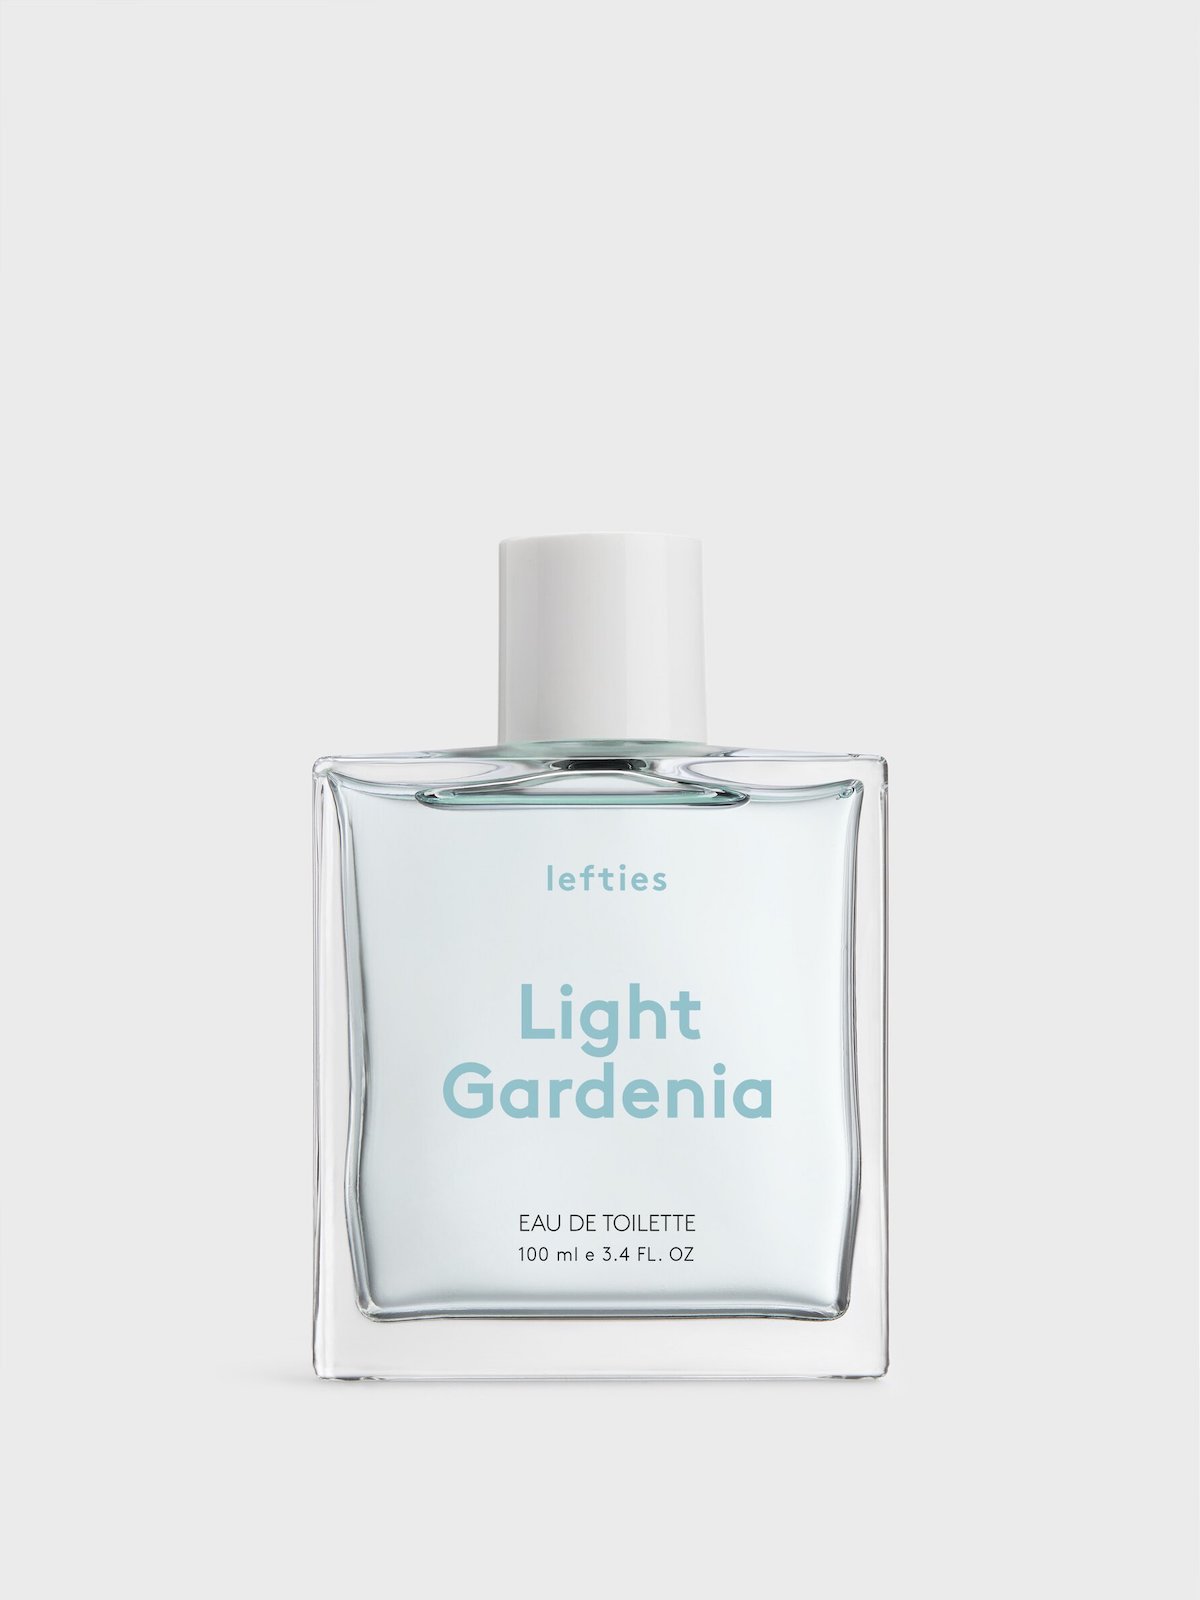 Le parfum Light Gardenia est composé de notes de tête de fleur d'oranger, de notes de fond de gardénia et de notes de fond de musc.